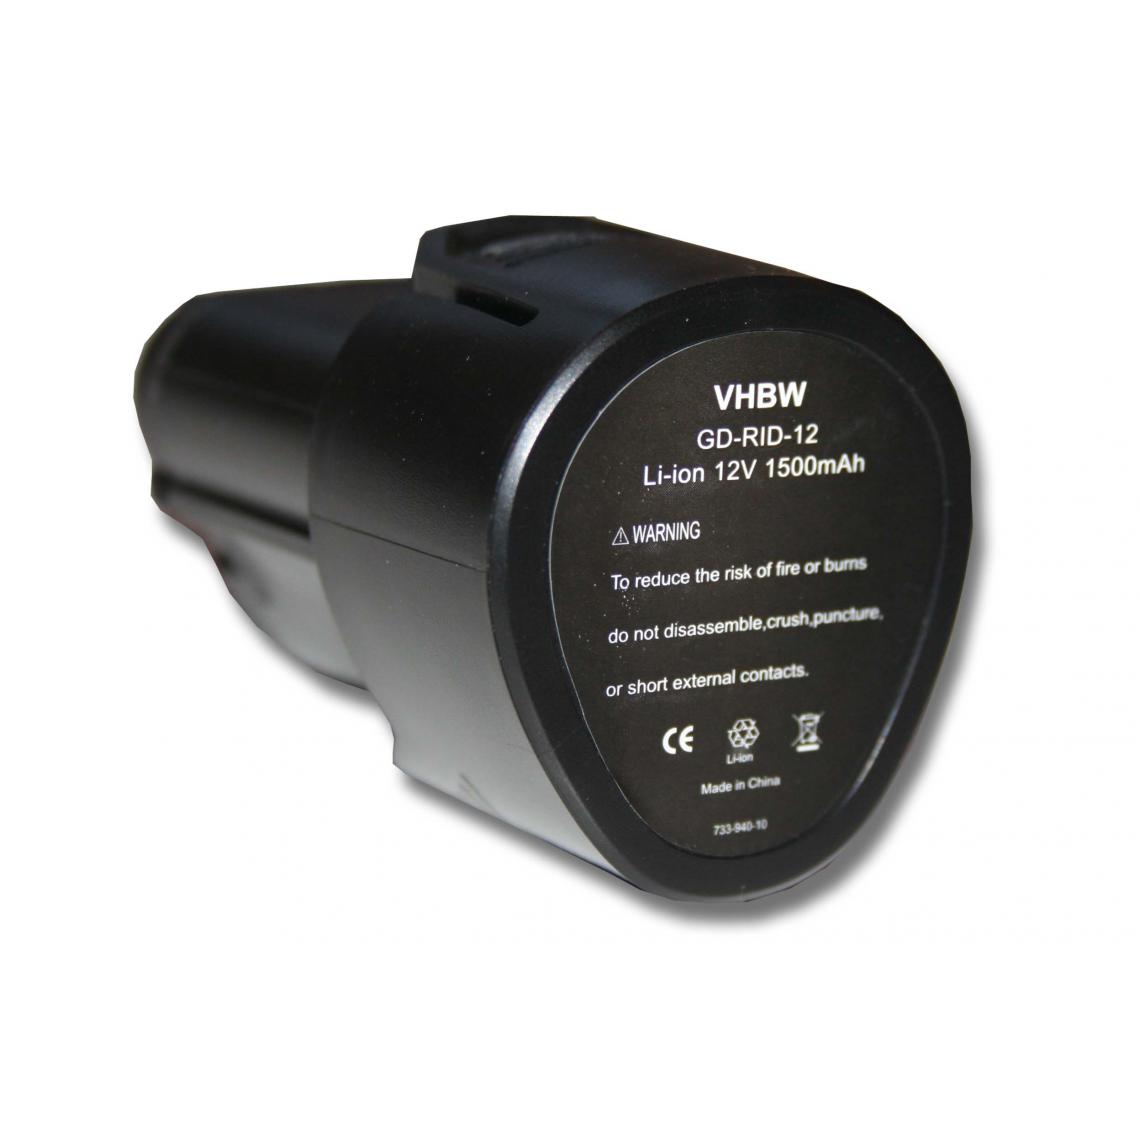 Vhbw - vhbw Batterie compatible avec Ridgid Jobmax, R8223400 outil électrique (1500mAh Li-ion 12V) - Clouterie